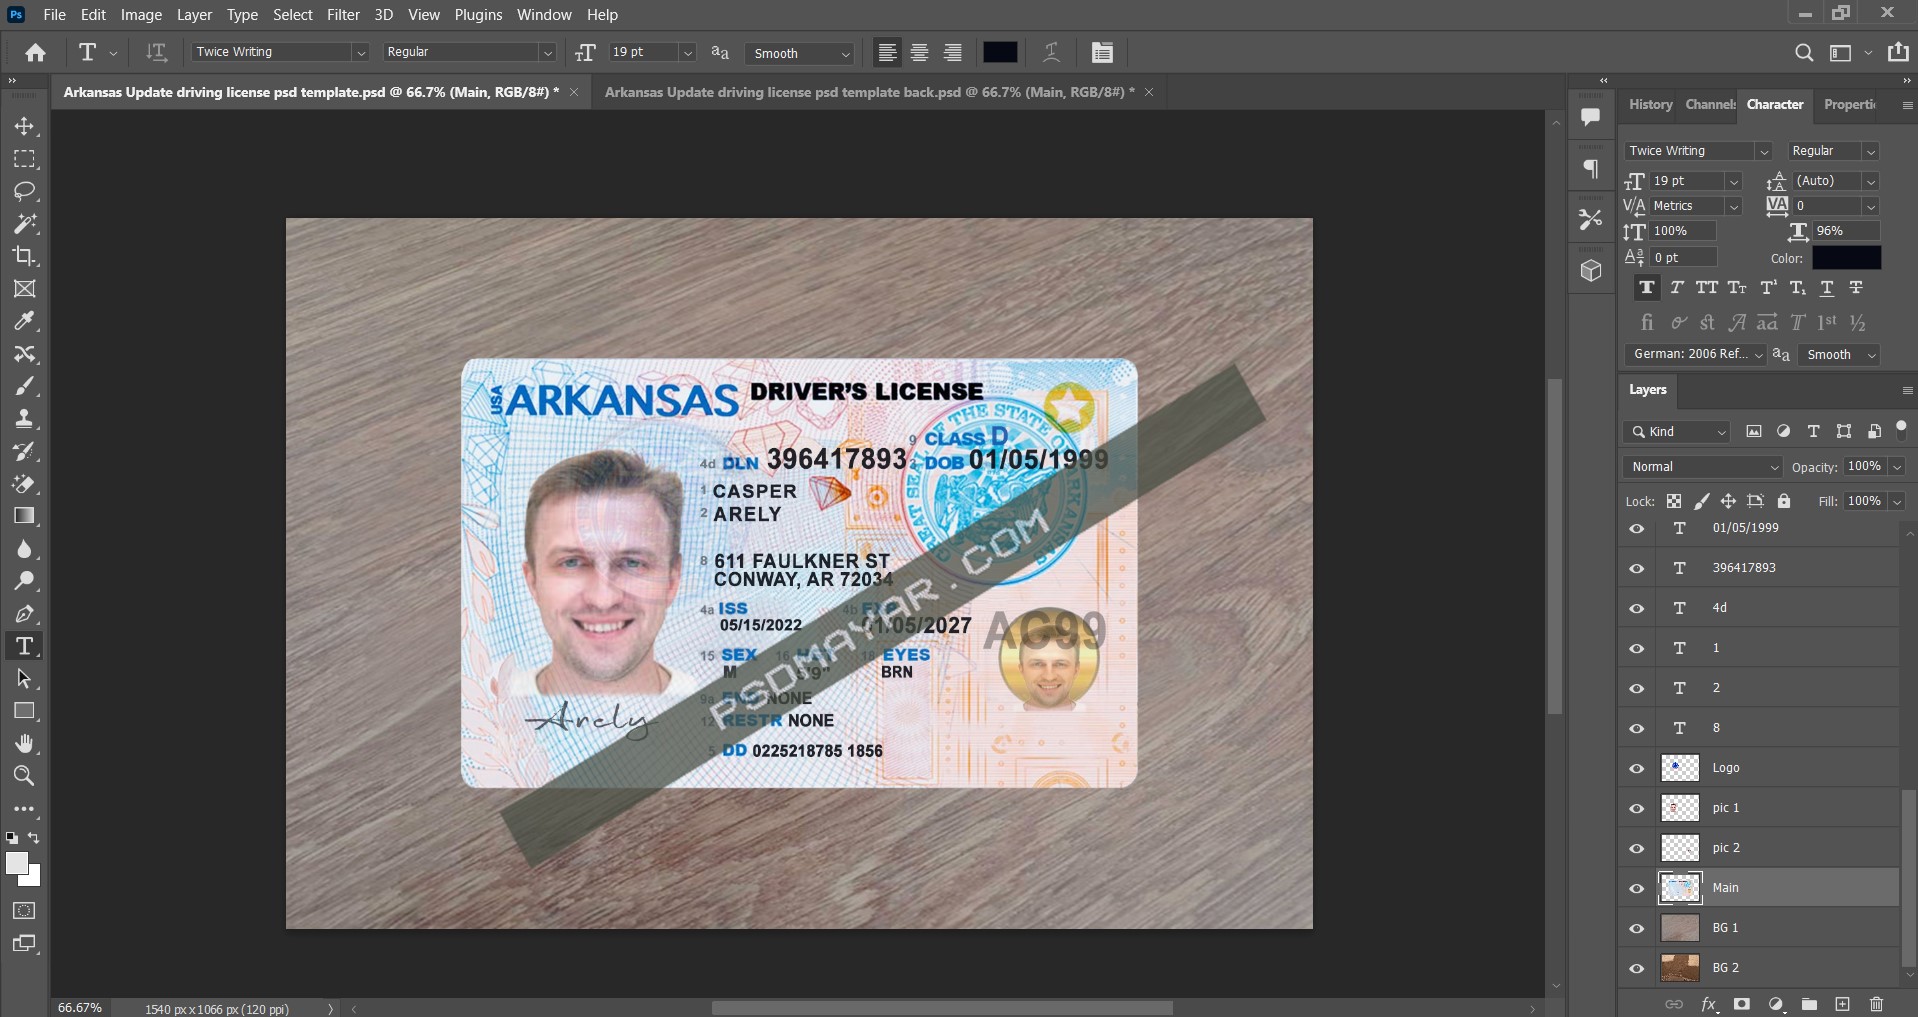 Arkansas Update driving license psd template